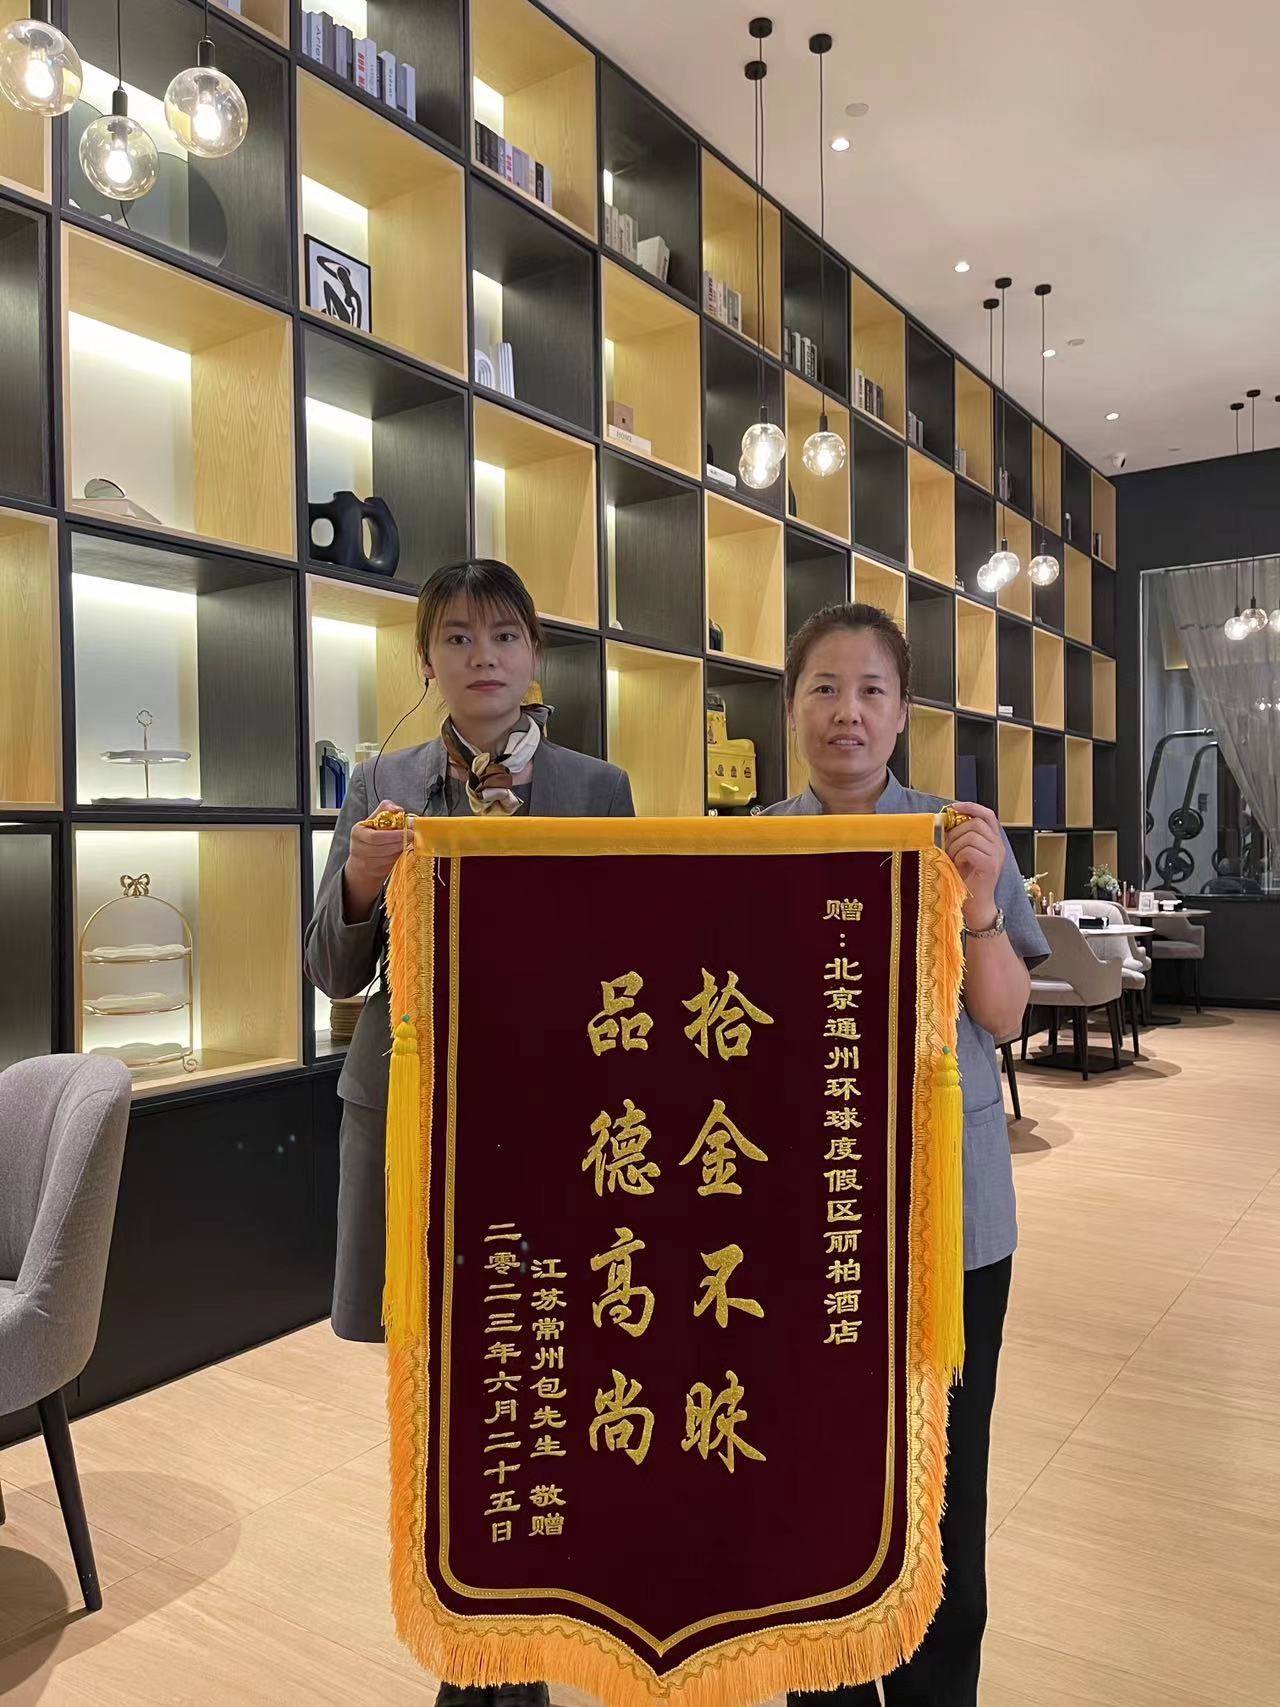 拾金不昧暖客心，北京通州环球度假区丽柏酒店员工获旅客高度赞誉